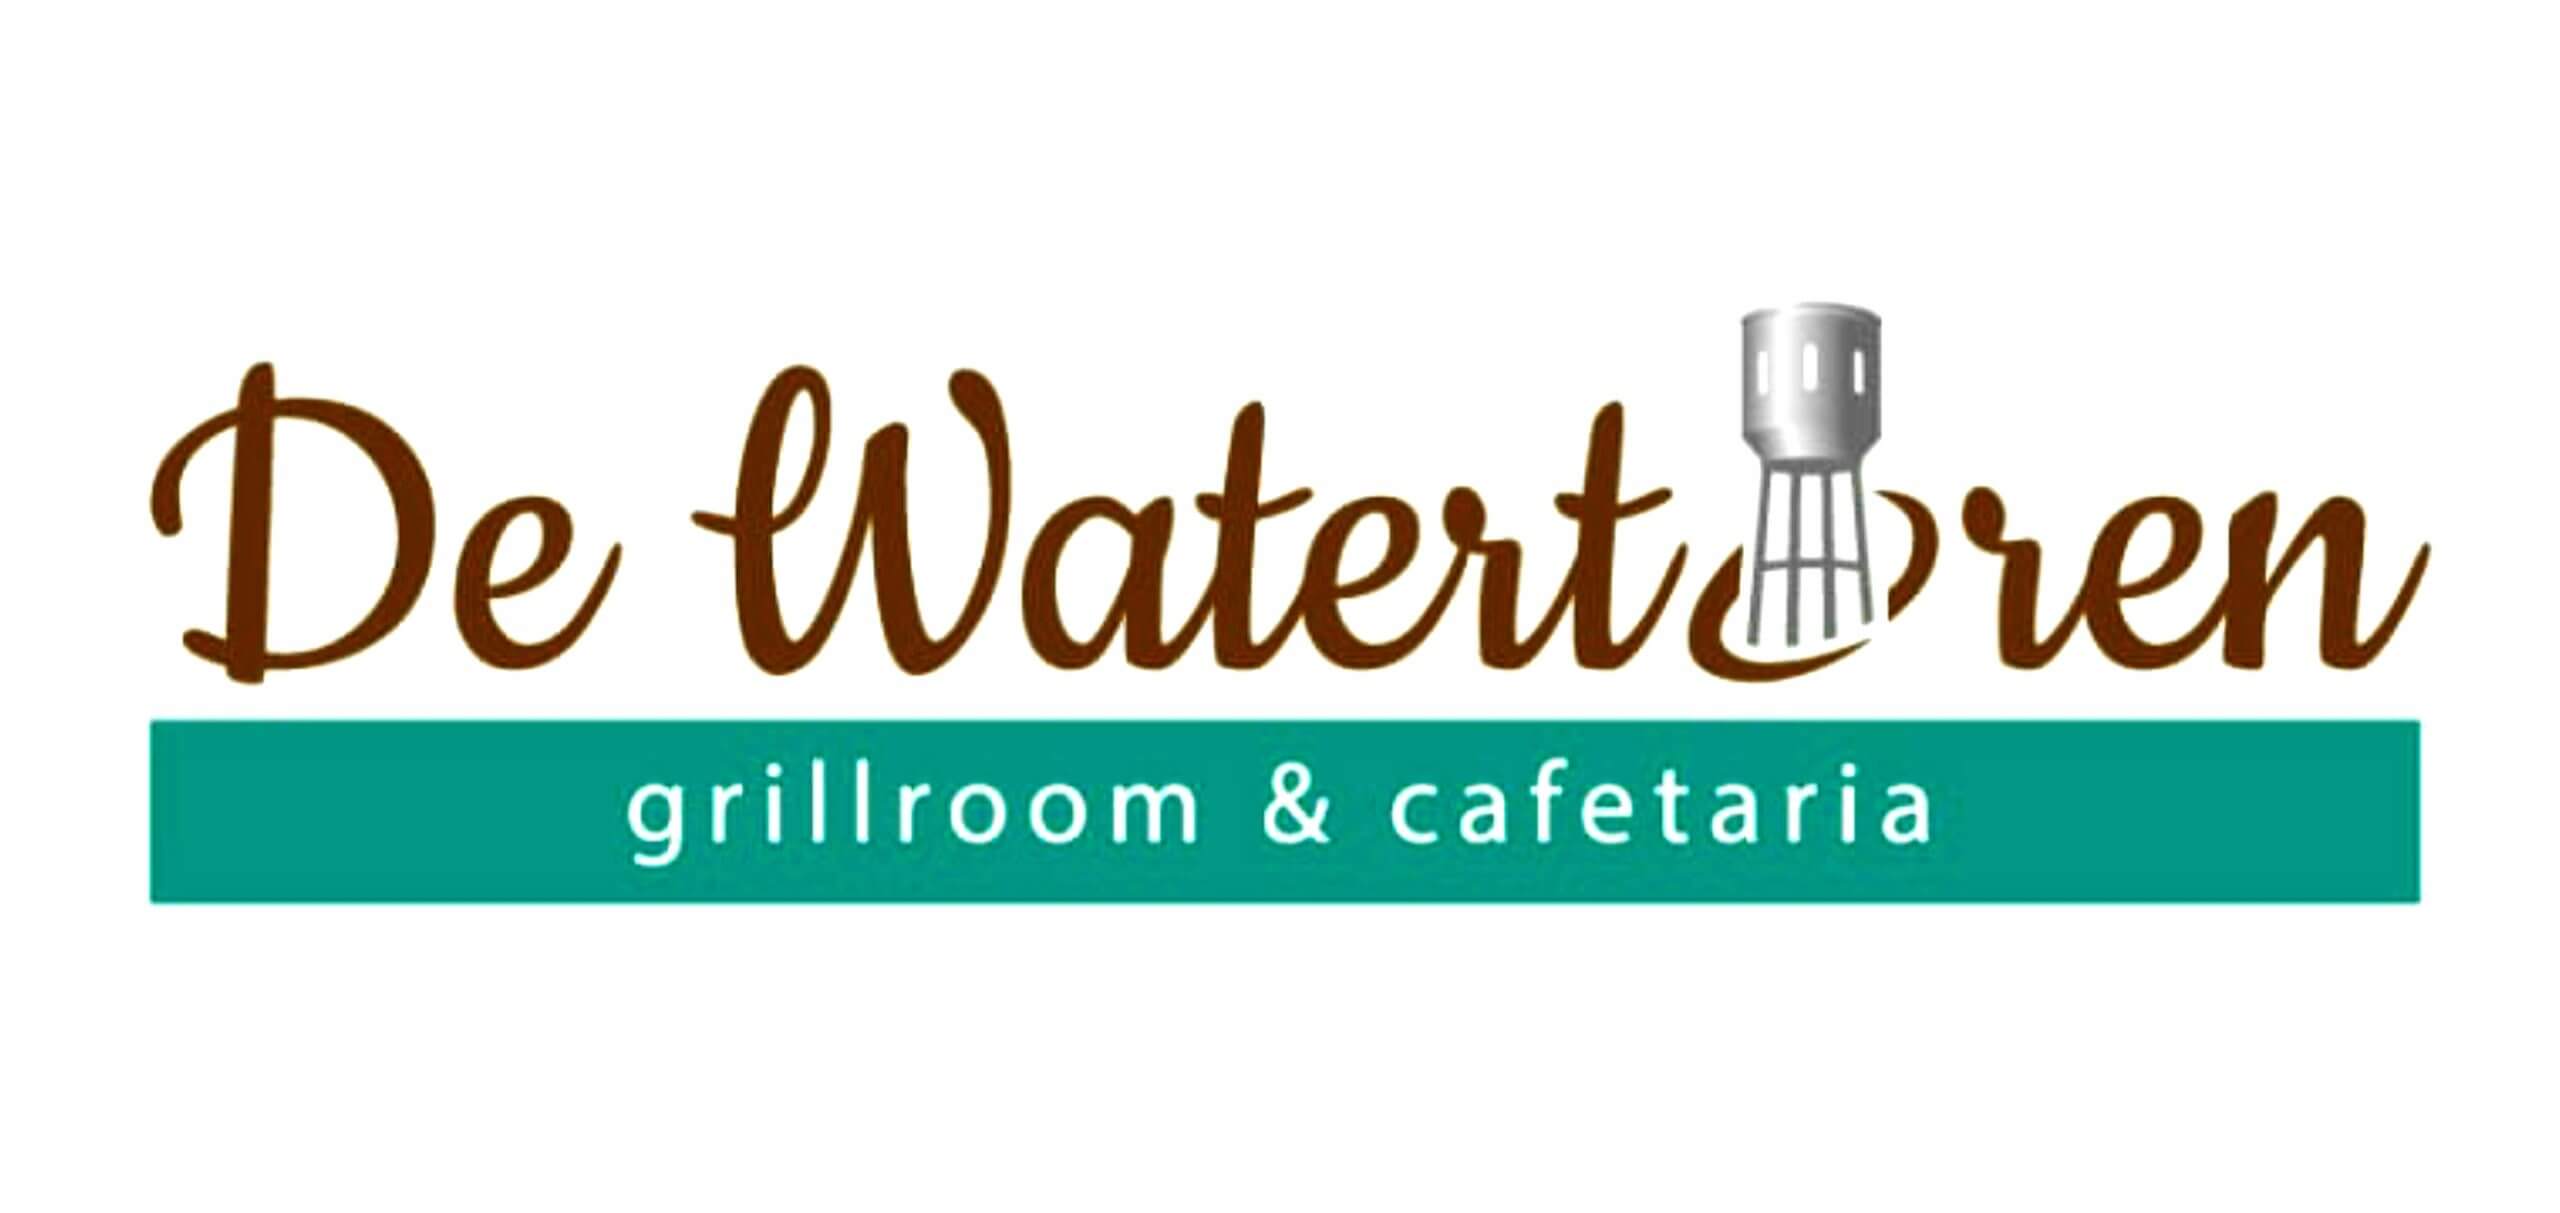 logo de watertoren fast service